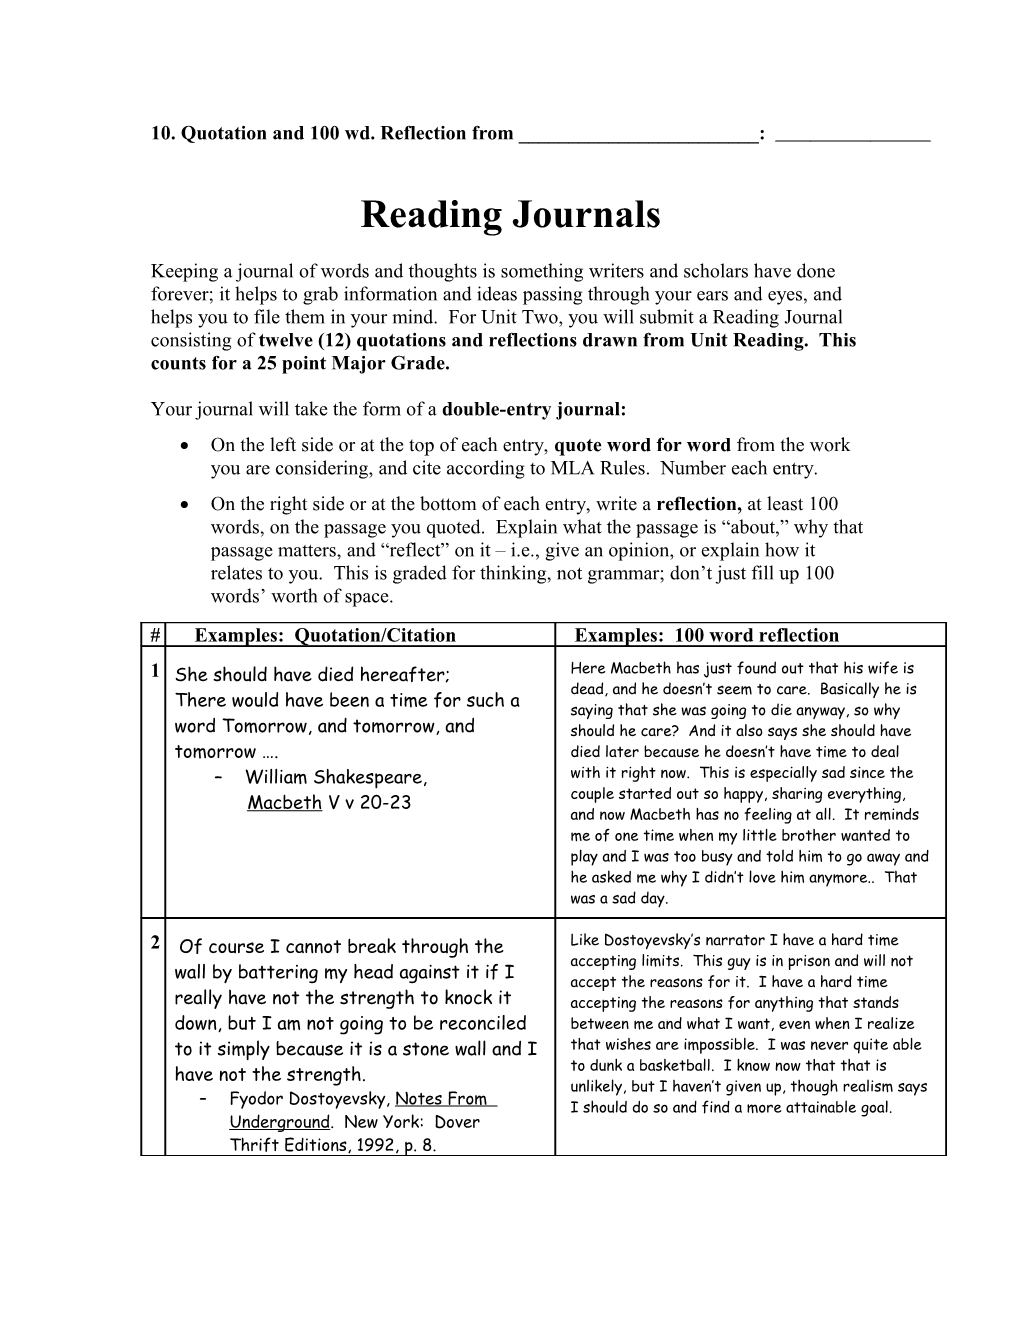 Reading Journal Checklist/Rubric